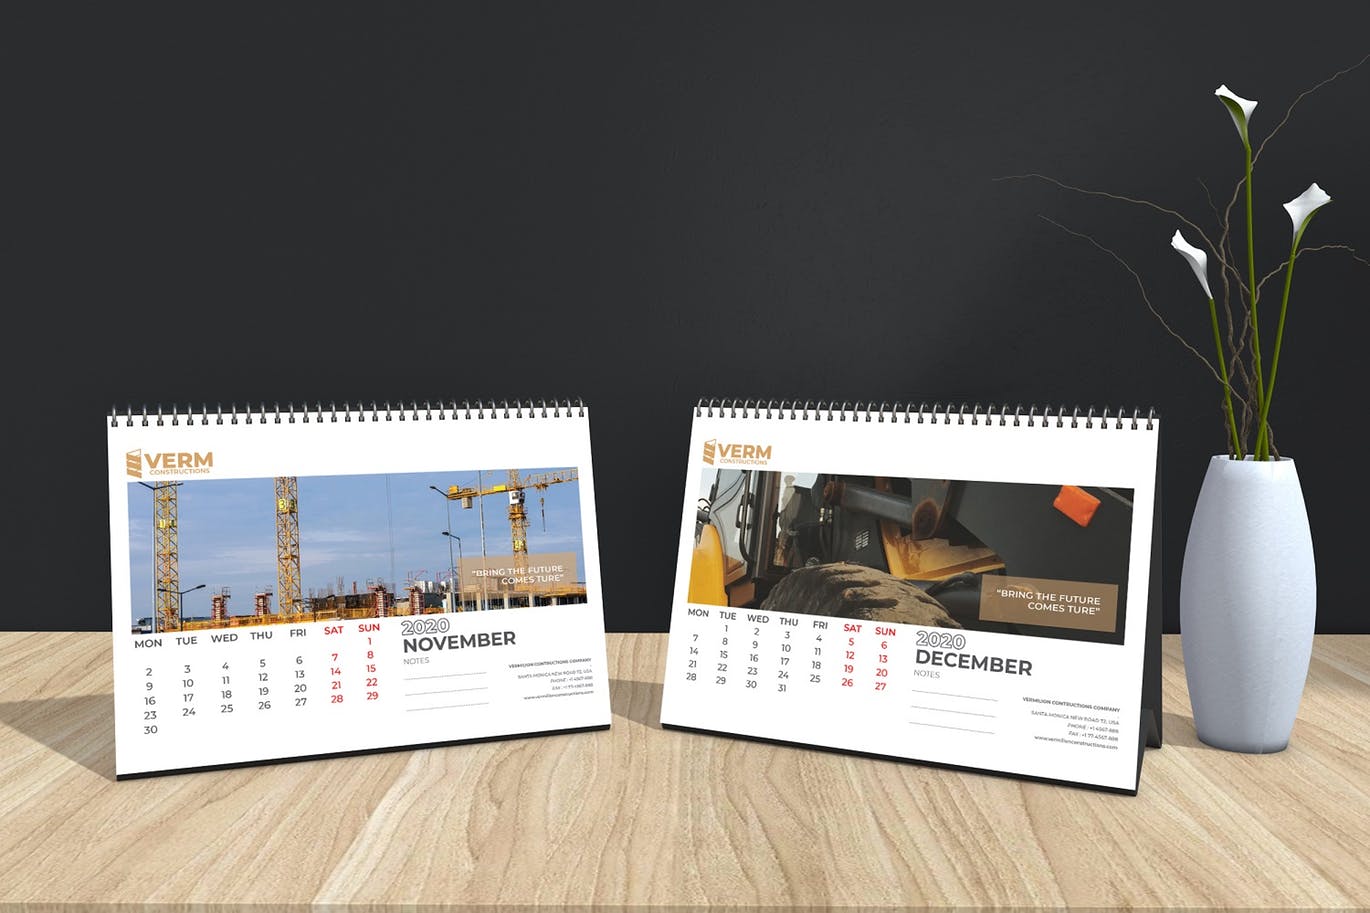 2020年建筑主题台历&挂墙日历表设计模板 Construction Wall & Table Calendar 2020插图(14)